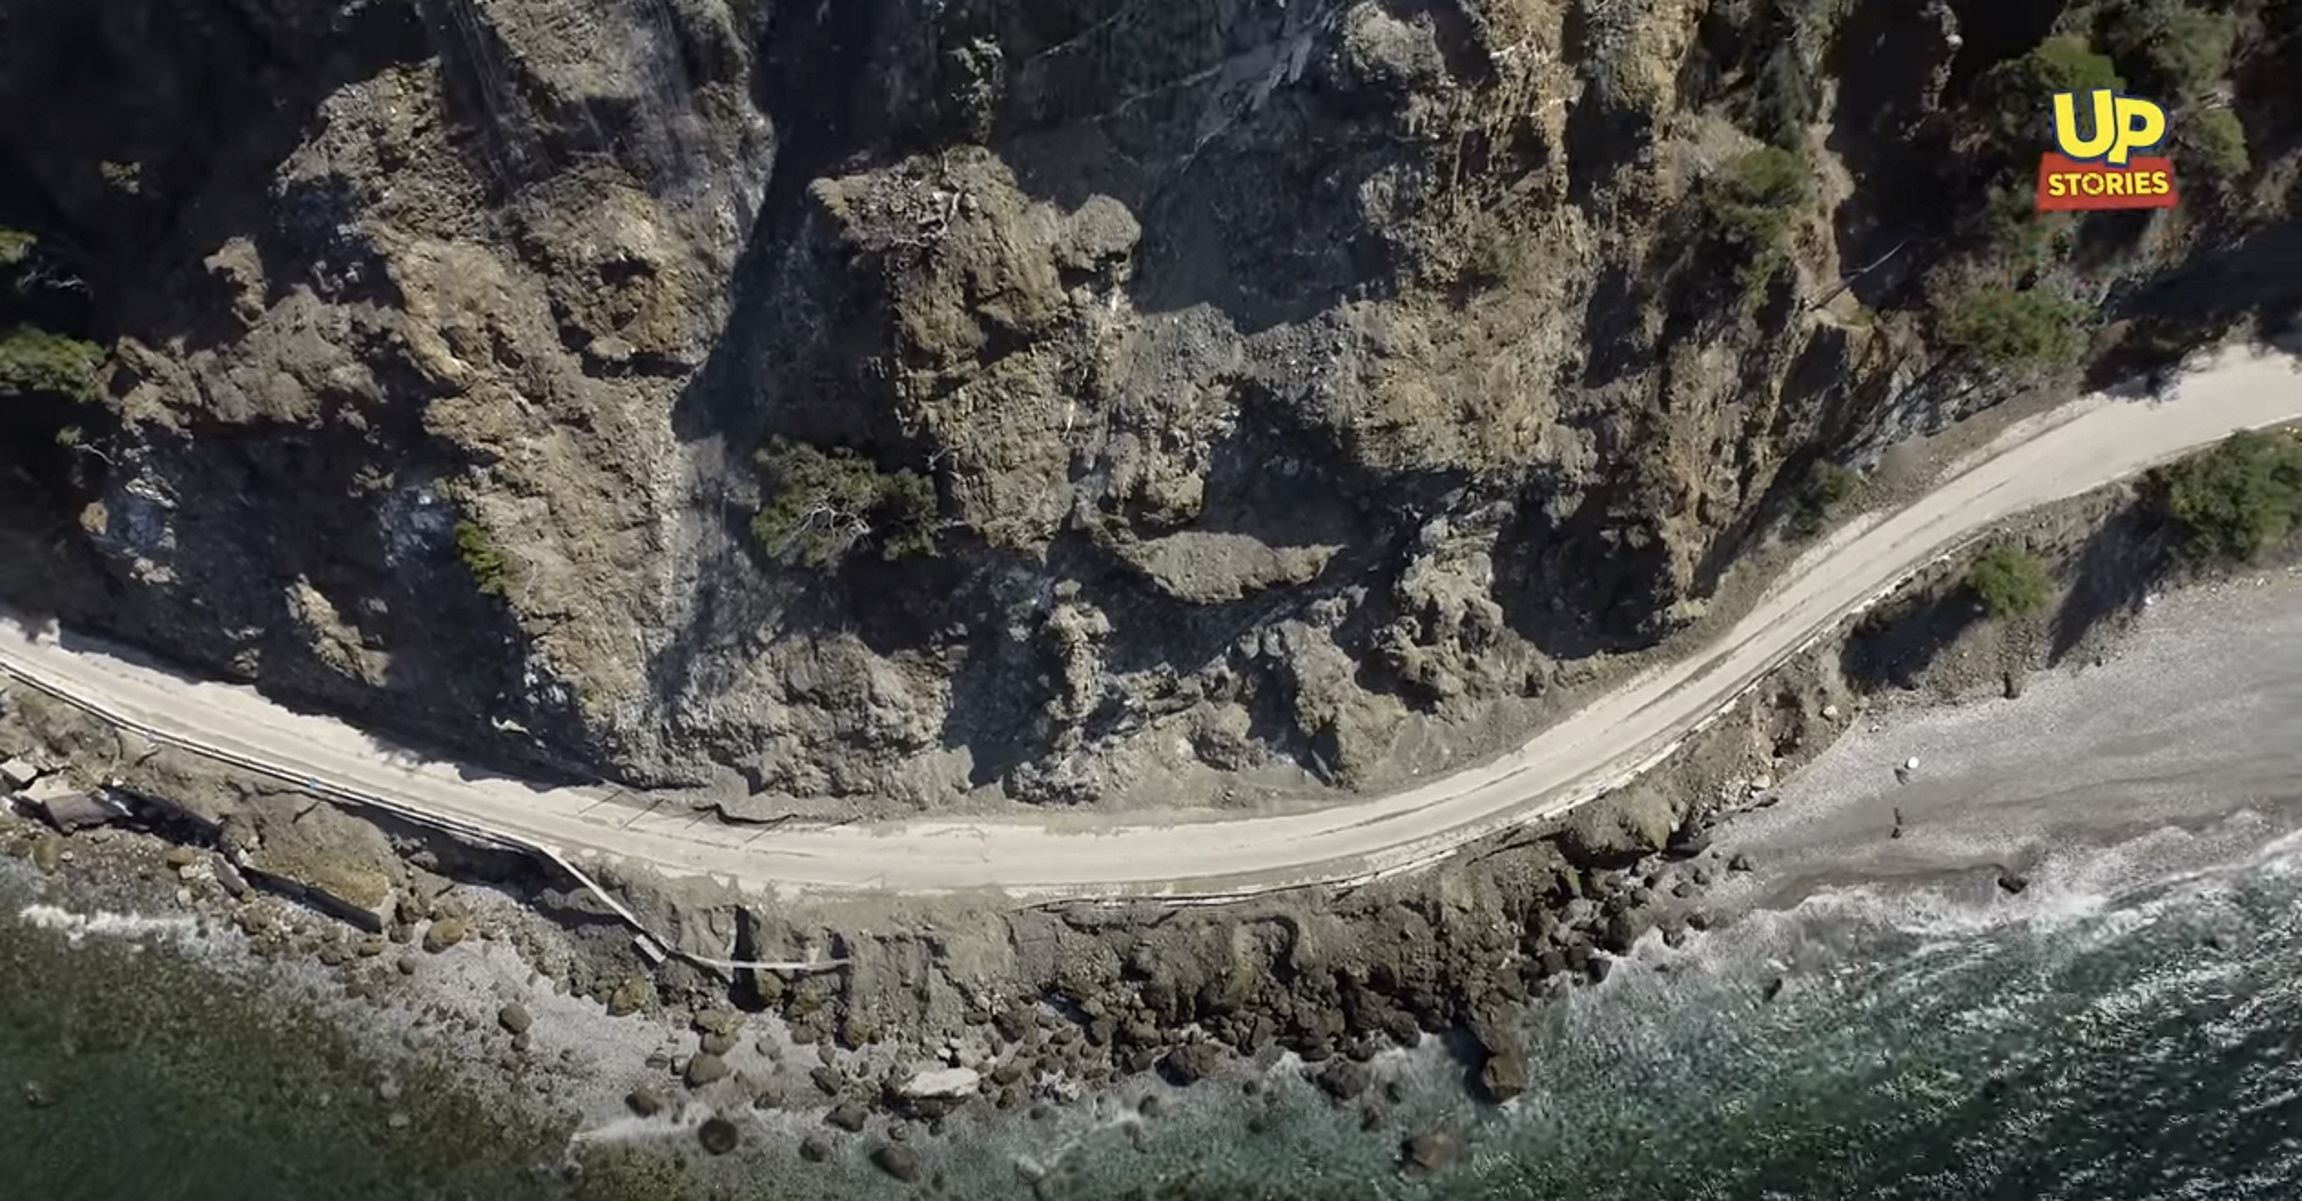 Προσοχή, βρέχει βράχους: Αυτός ο παραλιακός δρόμος της Αττικής είναι ο πιο επικίνδυνος της Ελλάδας (video)